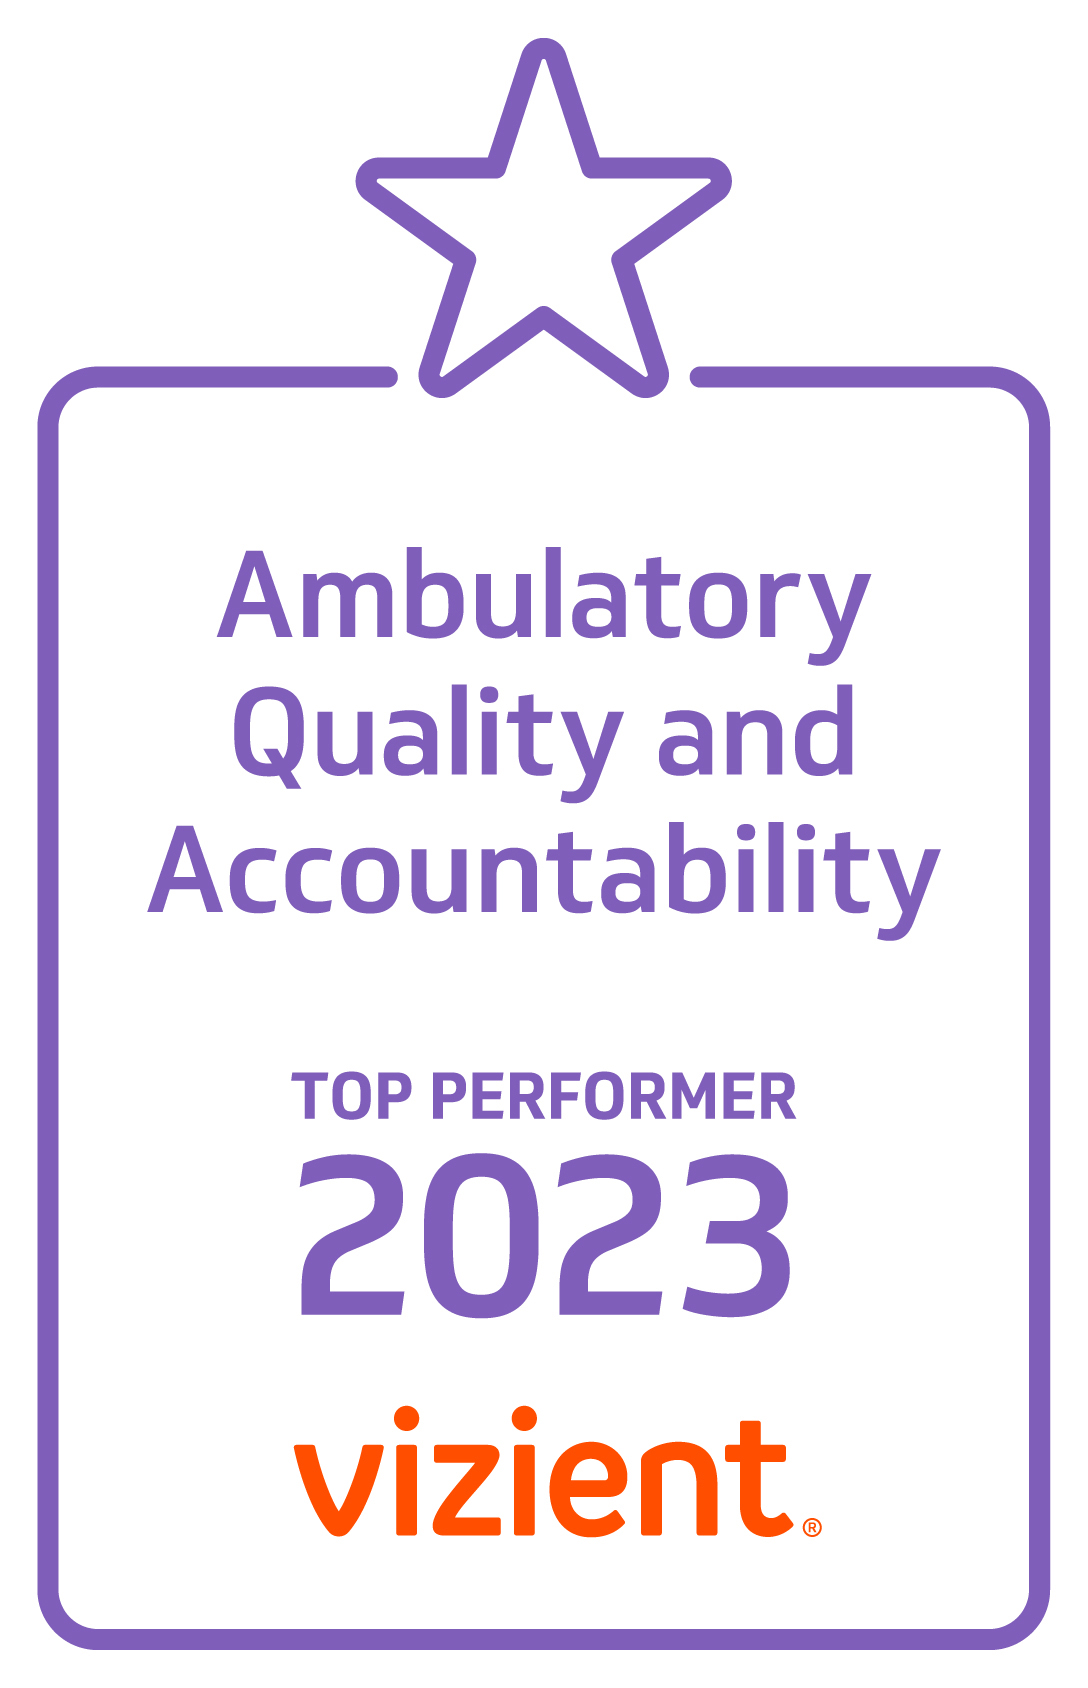 2023 Vizient Ambulatory Quality and Accountability Award